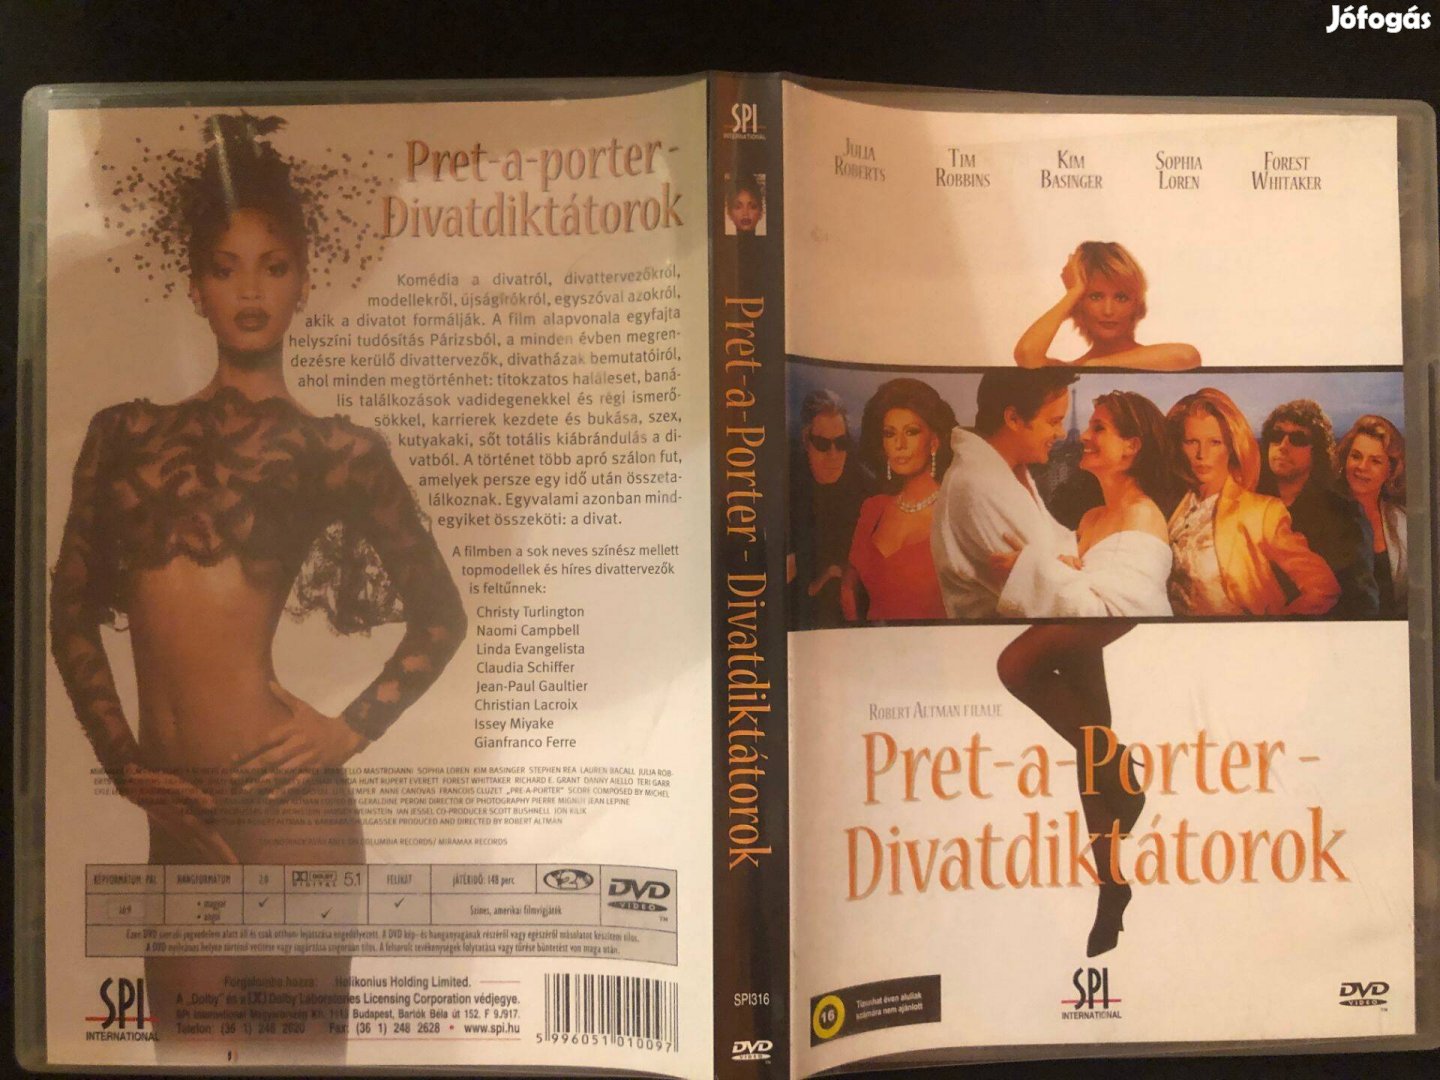 Divatdiktátorok - Pret-A-Porter DVD (karcmentes, SPI kiadás)